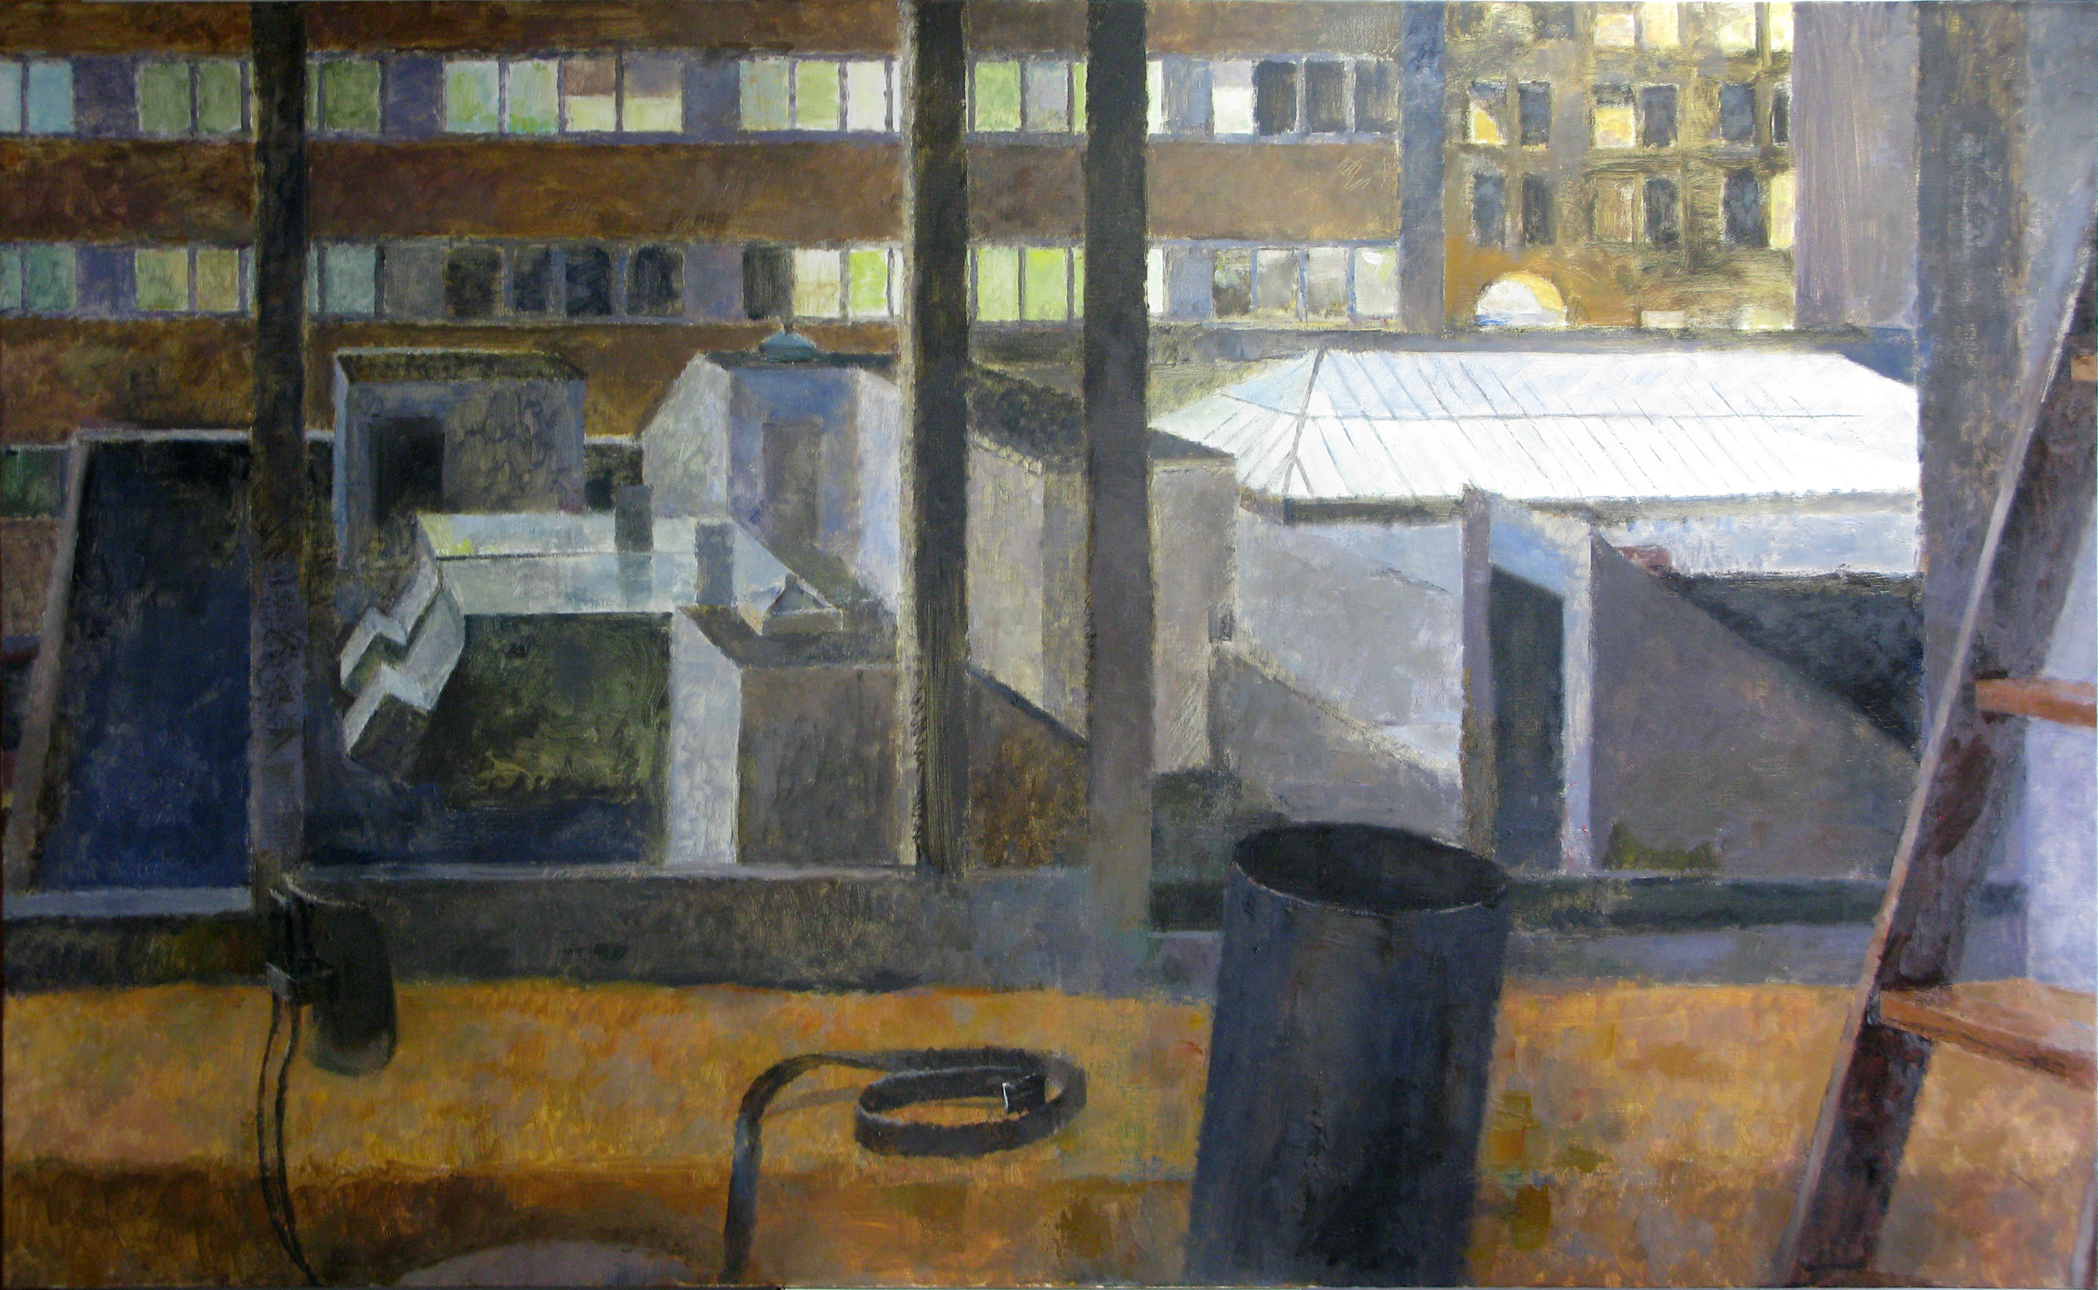 Studio at Night, 40" x 66", oil on linen, 2013.